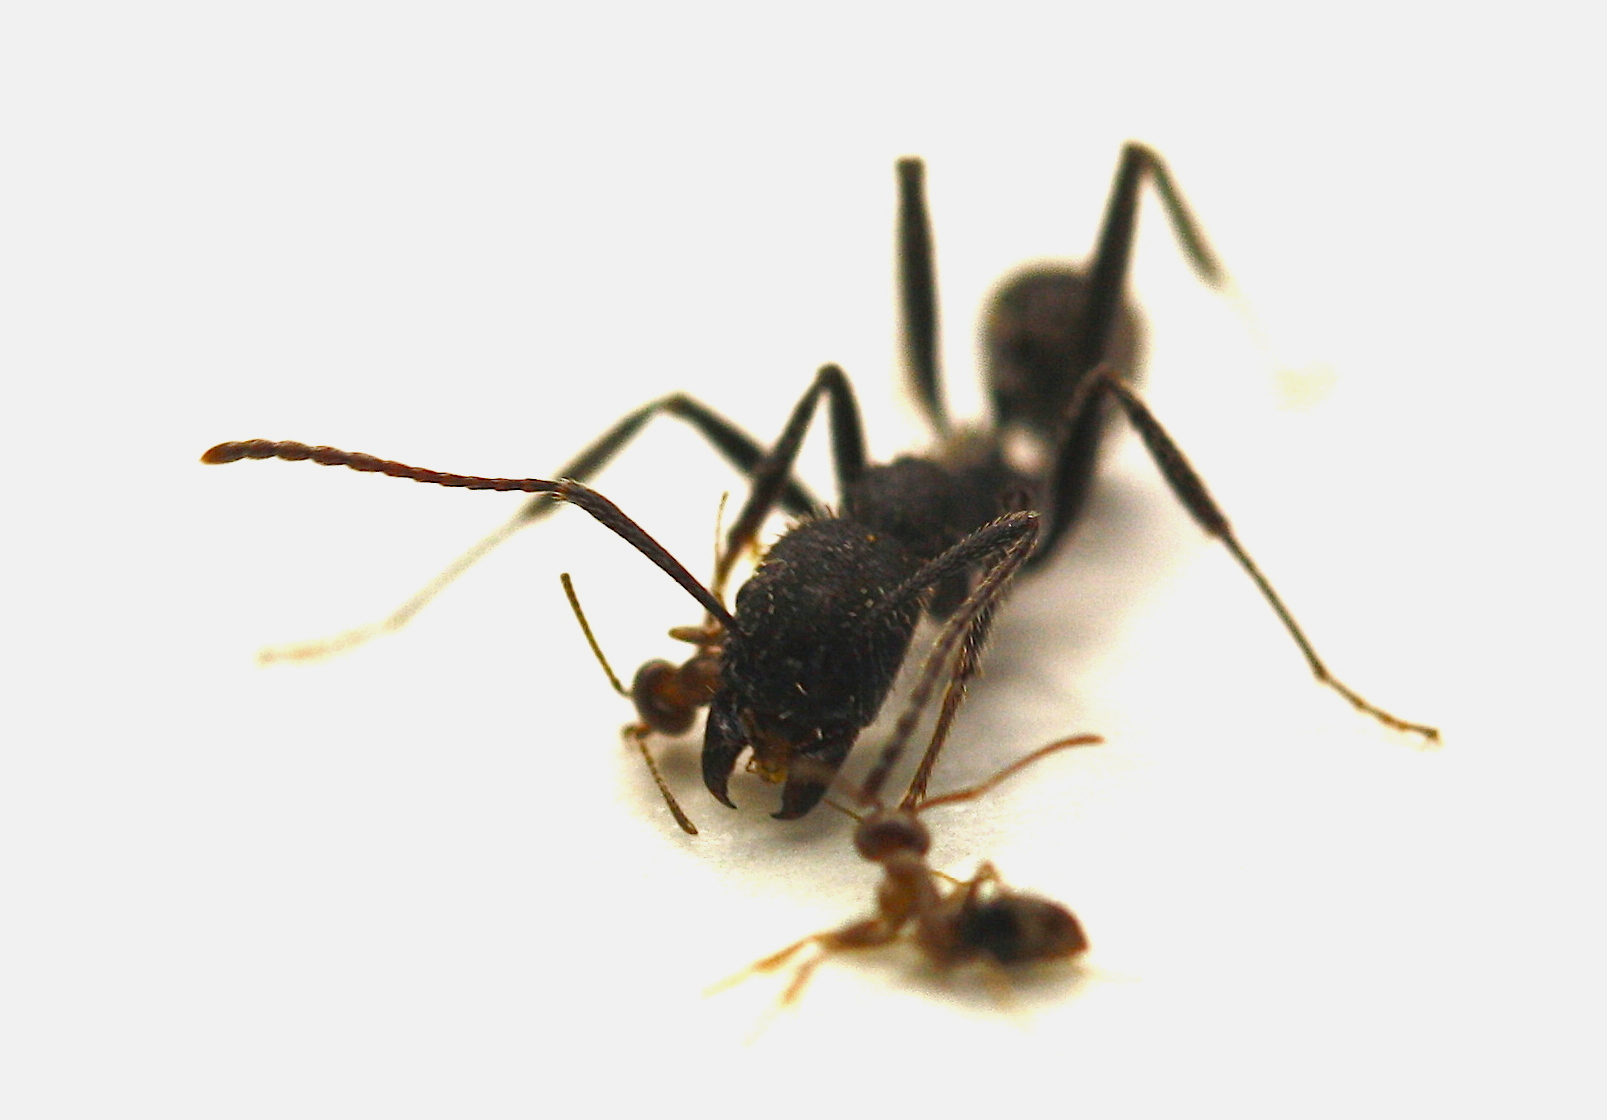 Des fourmis d'Argentine (espèce invasive) attaquant une espèce locale (Olivier Blight)